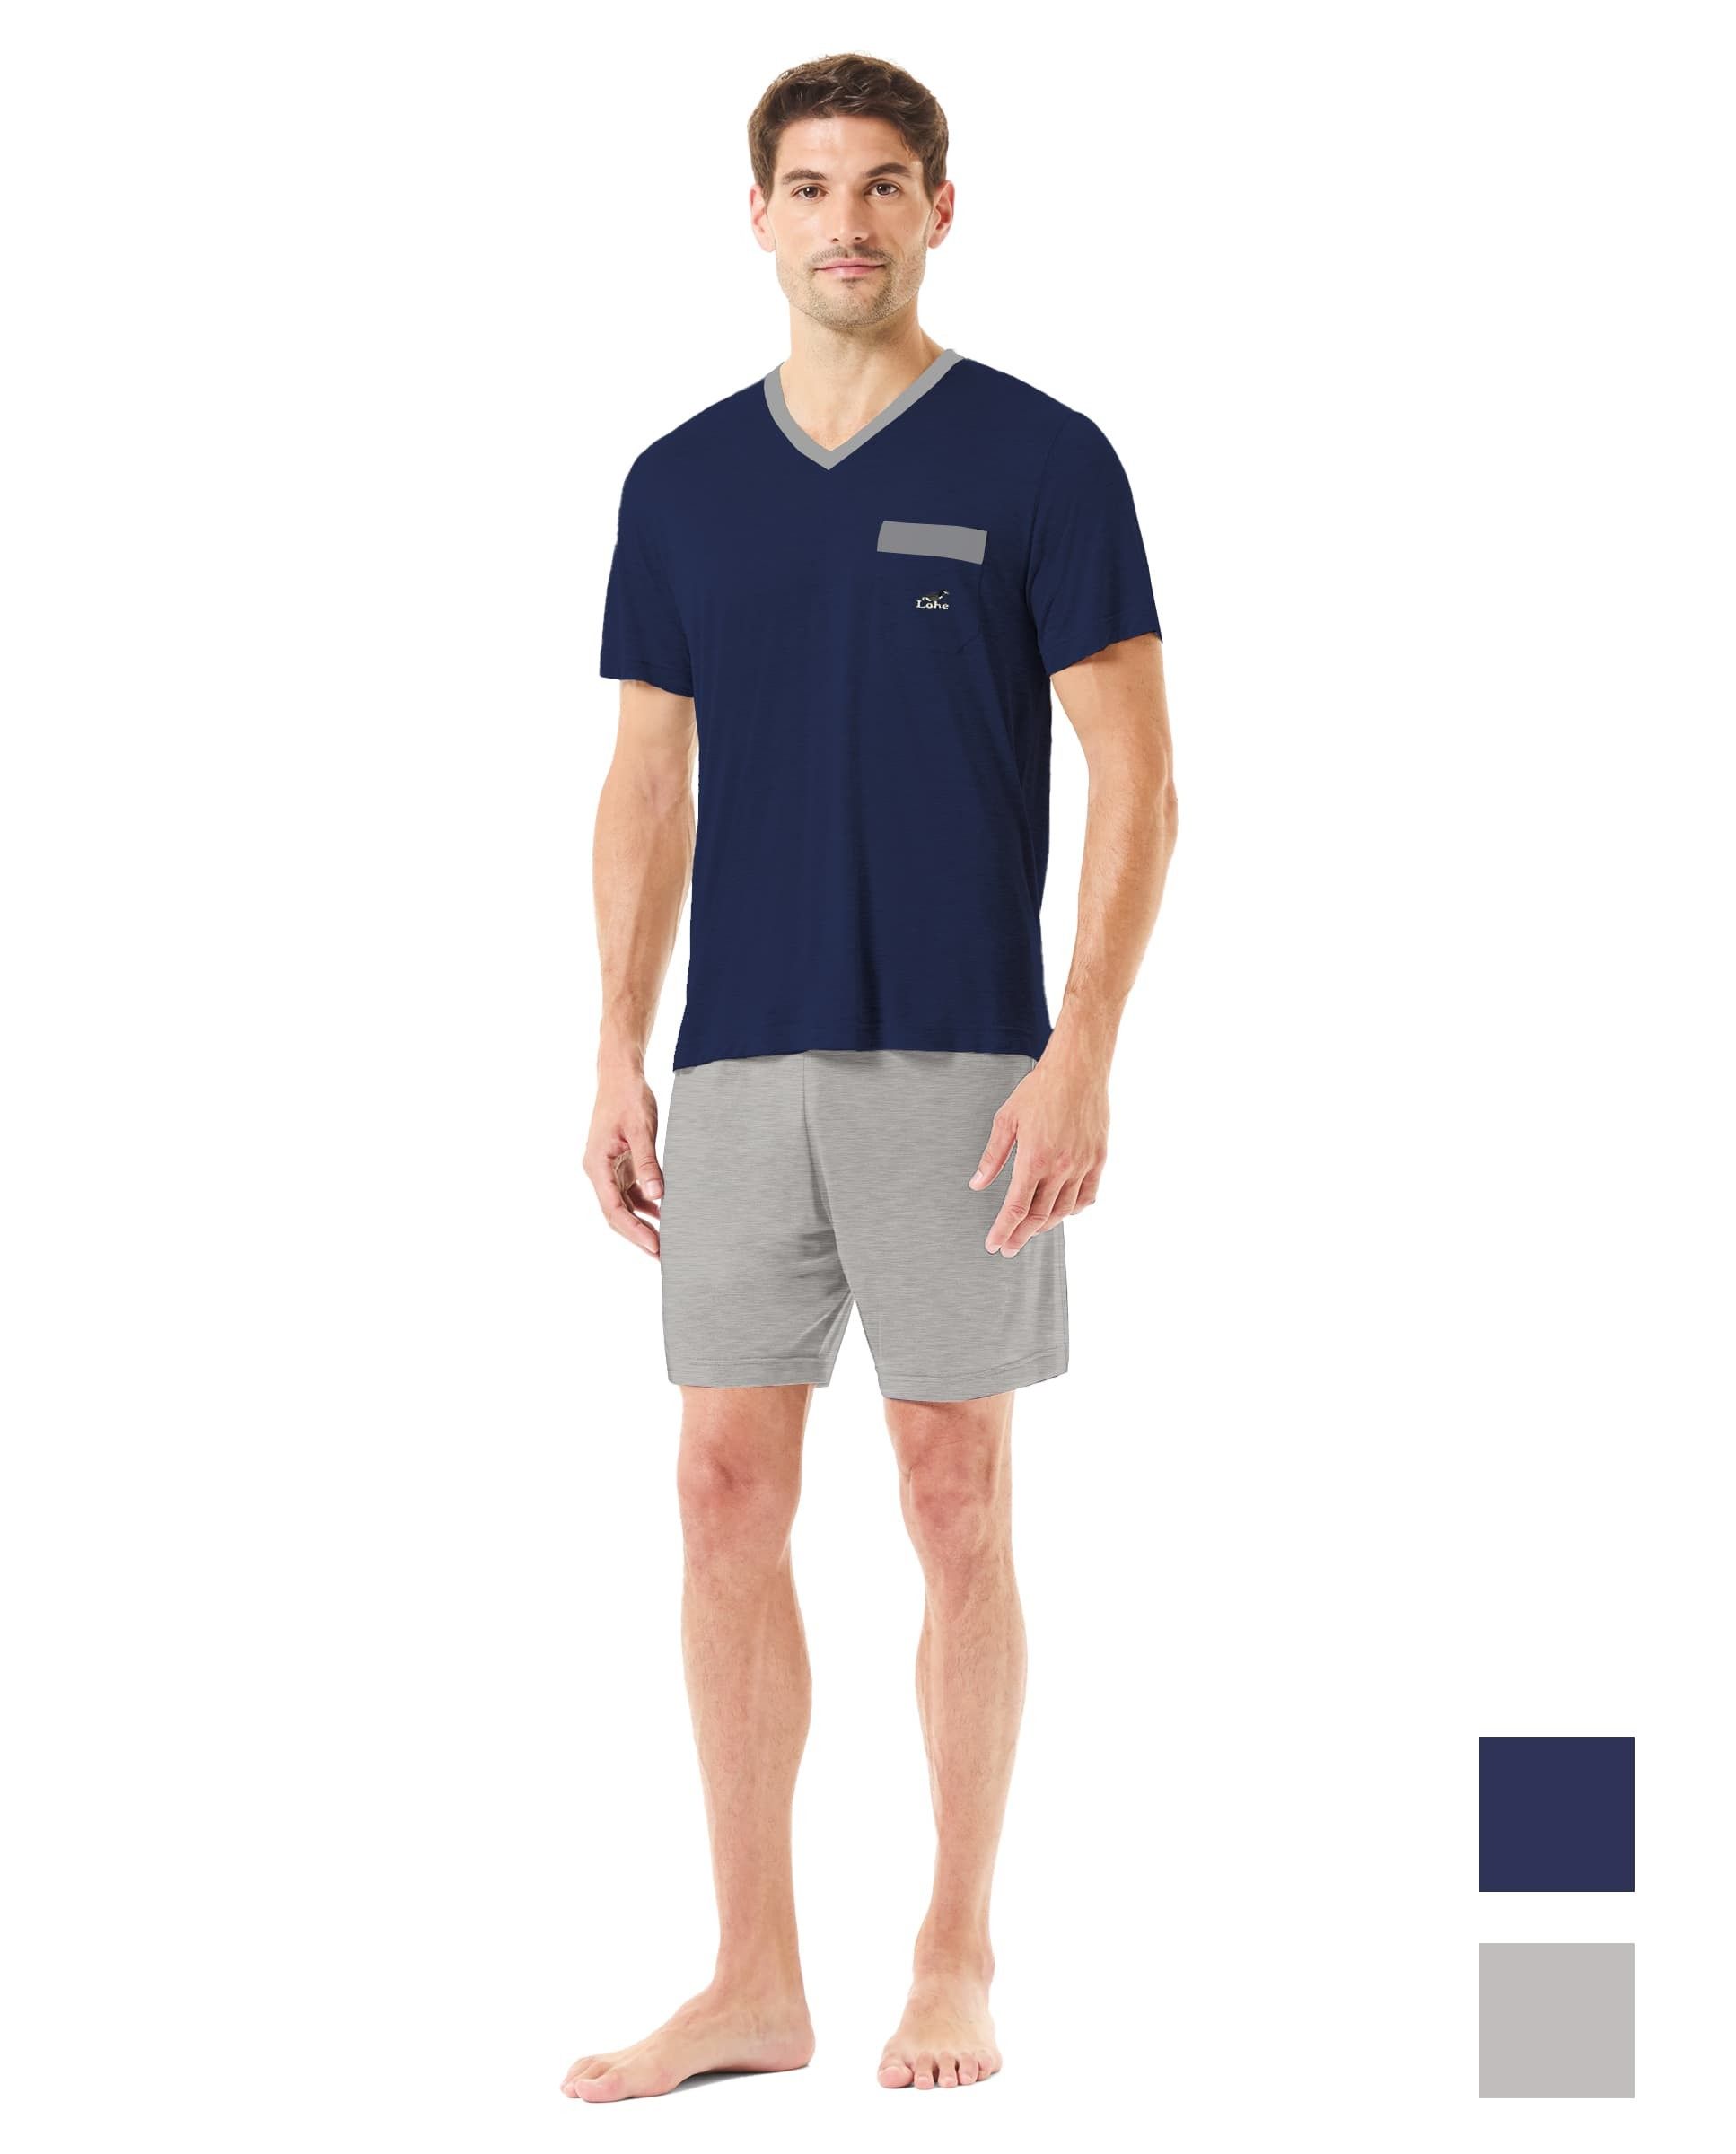 Hombre con pijama corto de verano con camiseta de pico marino y pantalón corto gris